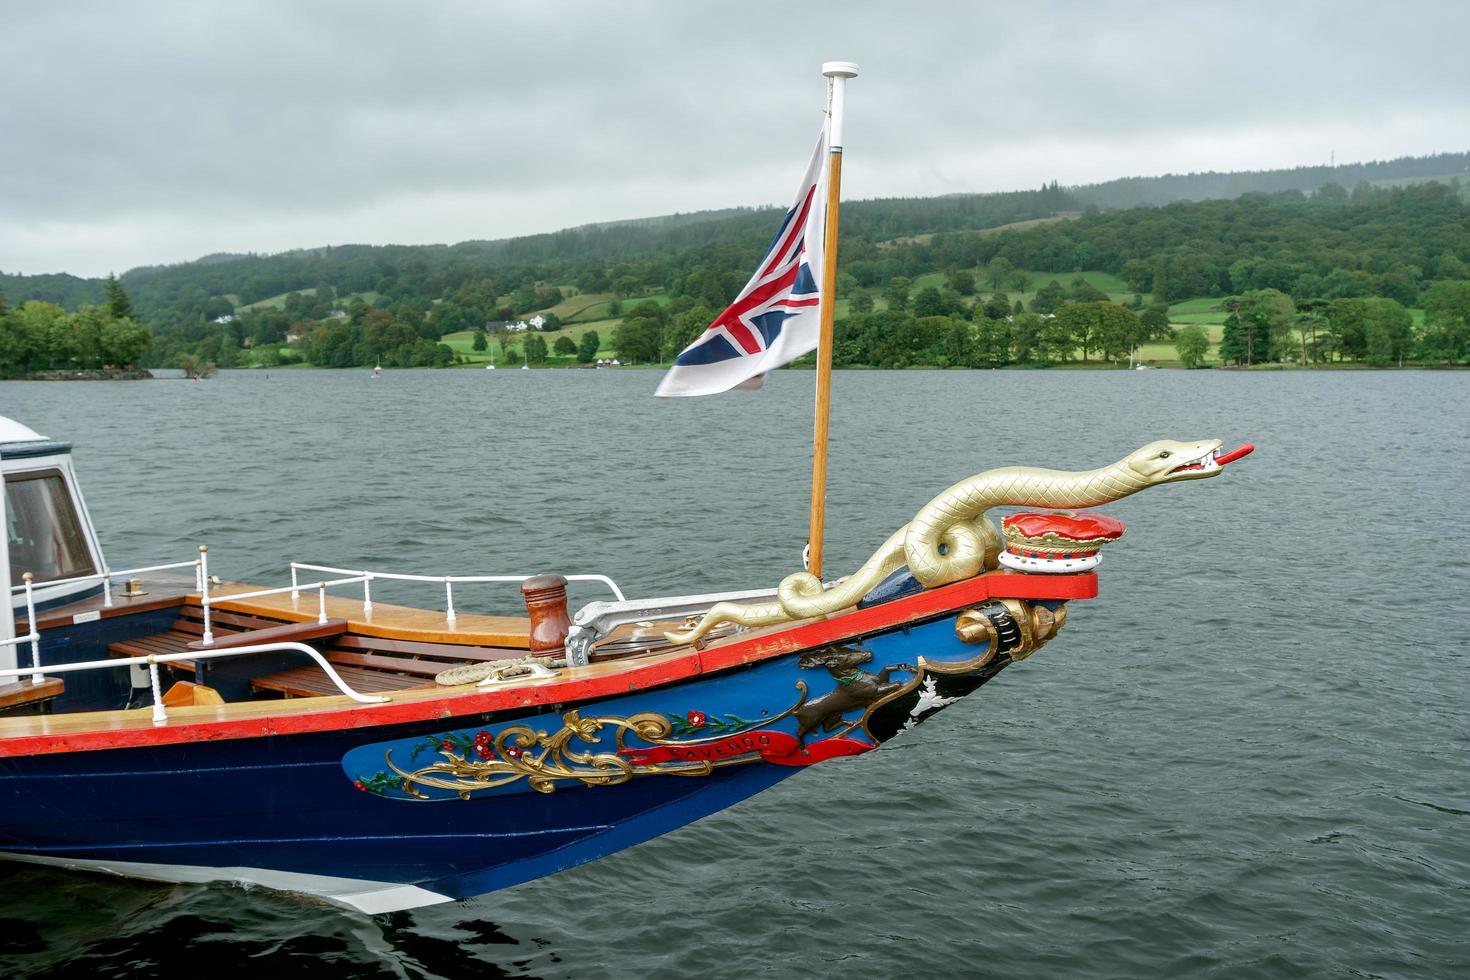 coniston, lake district, cumbria, Storbritannien, 2015. sydney sjöormen galjonsfigur av steam yacht gondol foto